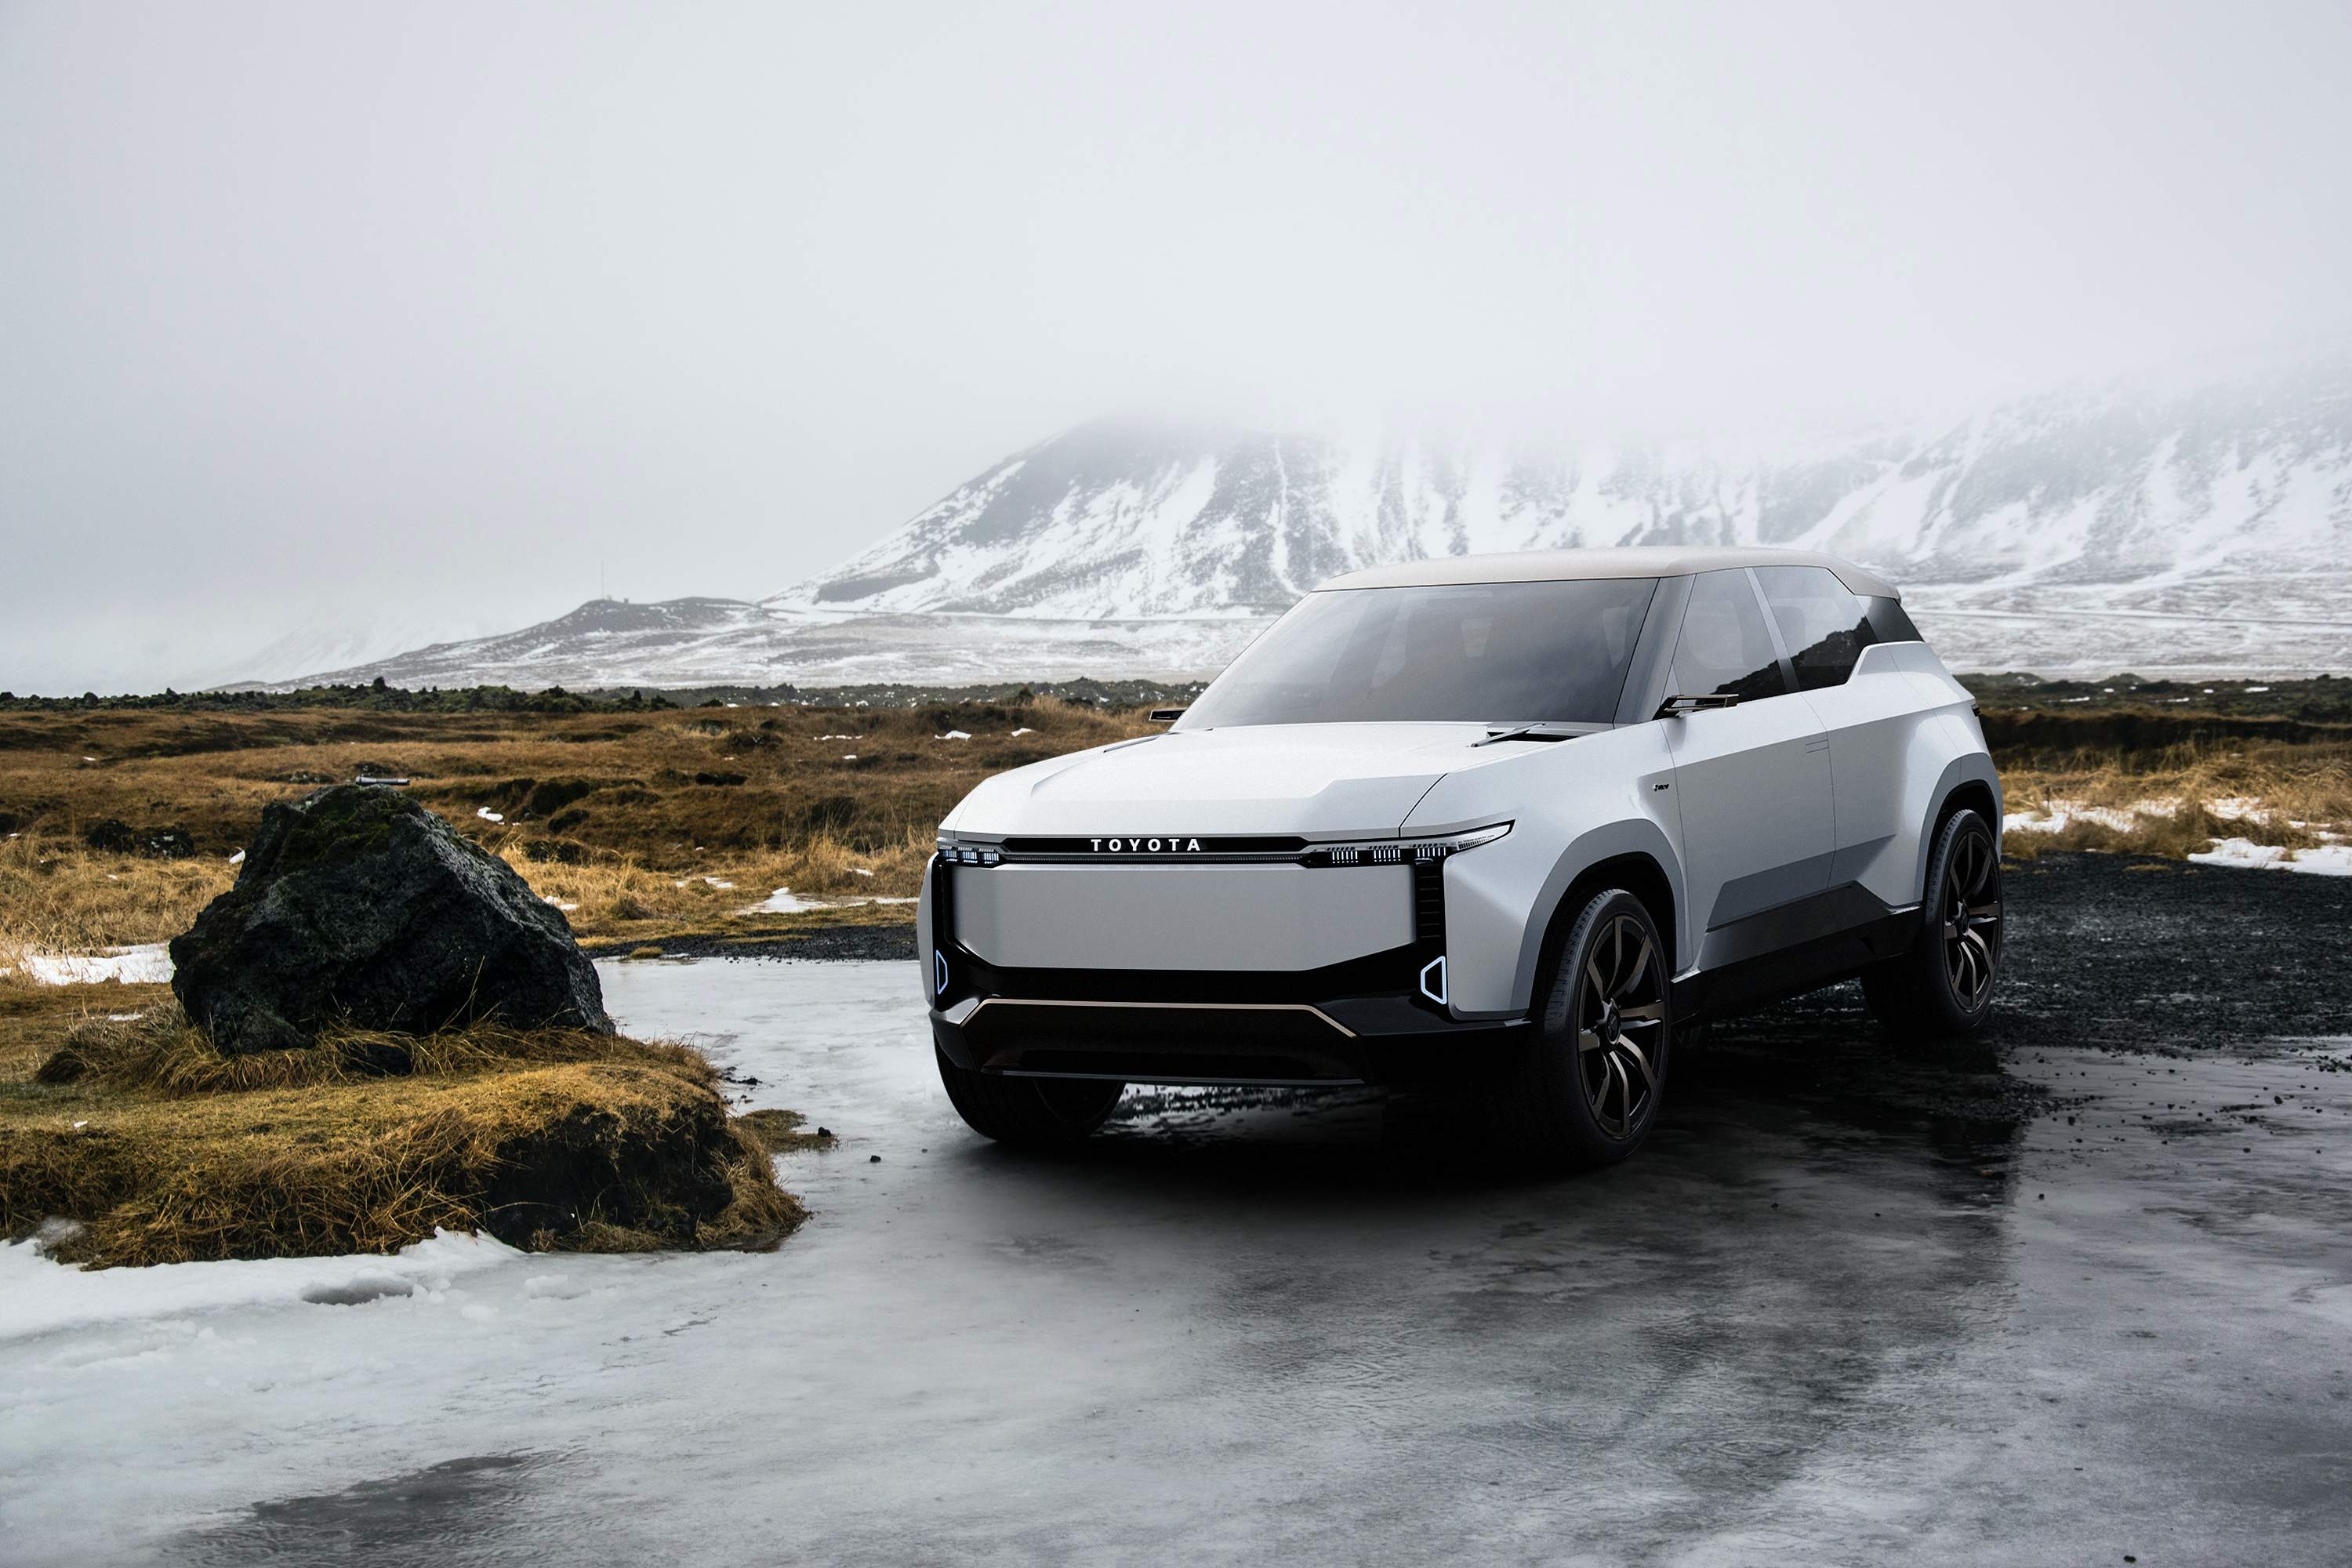 Concept Toyota Land Cruiser điện: SUV điện 7 chỗ ngồi với "mô men xoắn hứa hẹn"